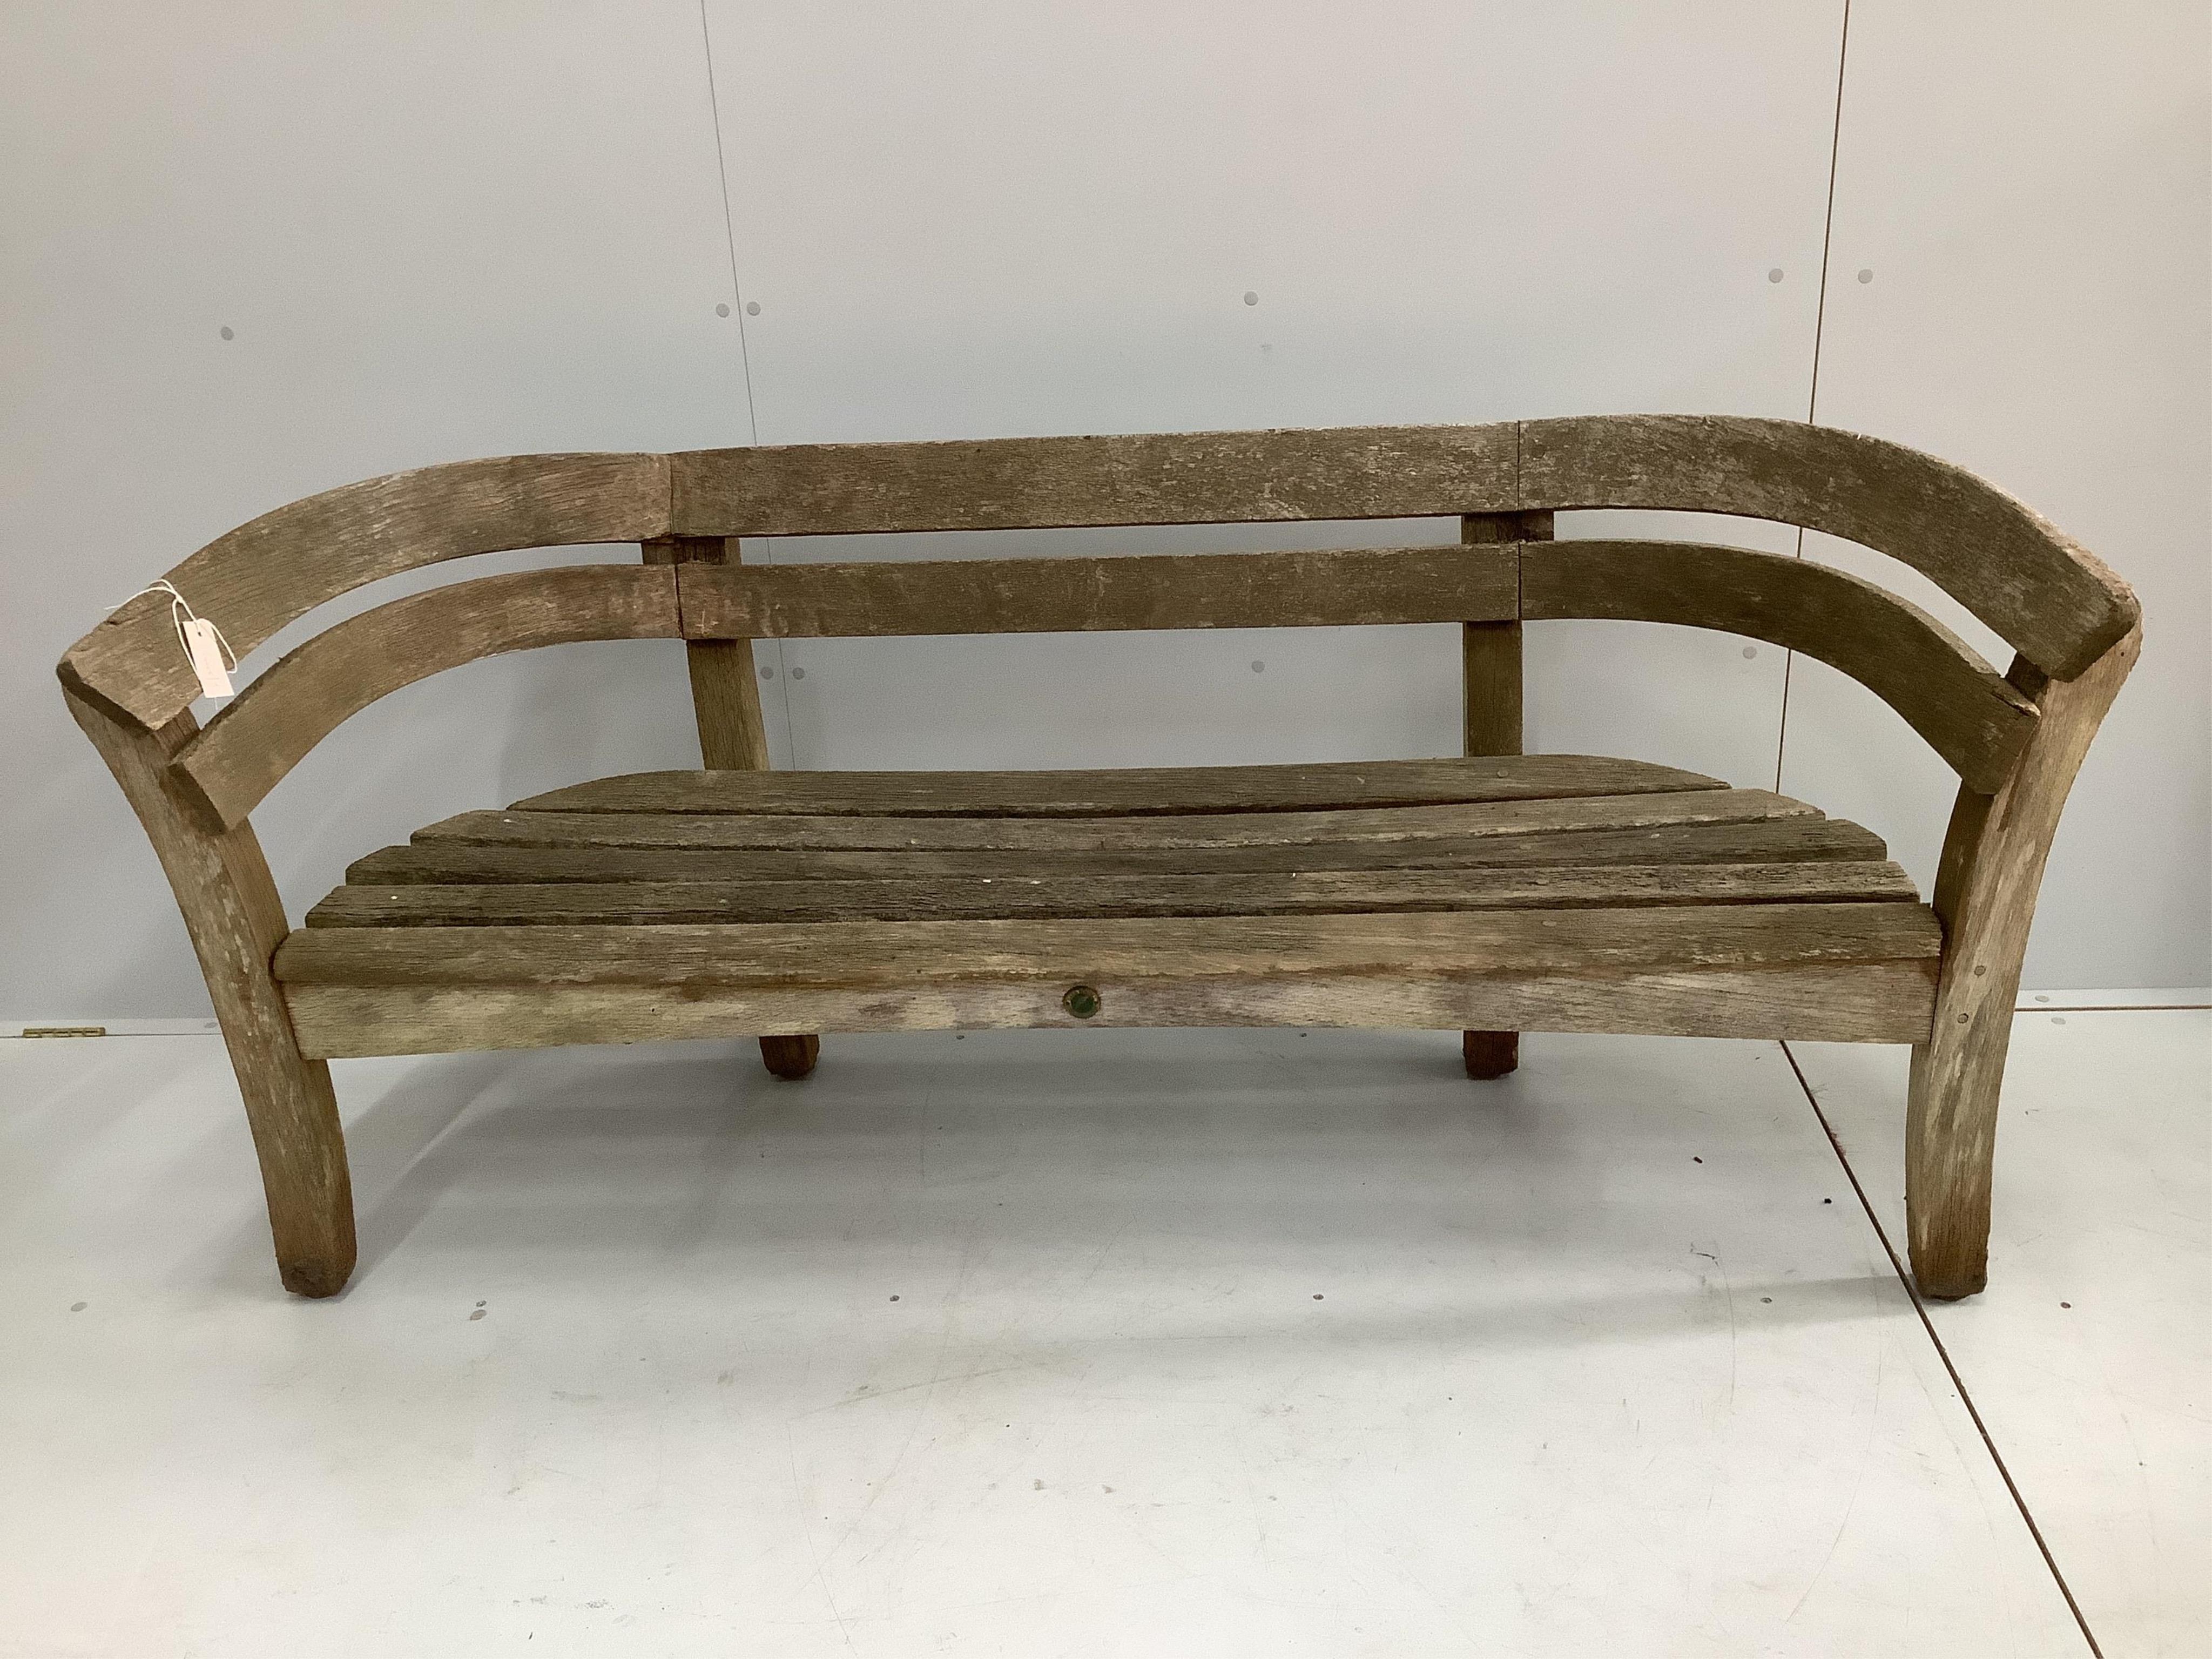 A Gaze Burvill steam bent oak “Court” garden bench seat, width 170cm, depth 51cm, height 80cm. Condition - fair